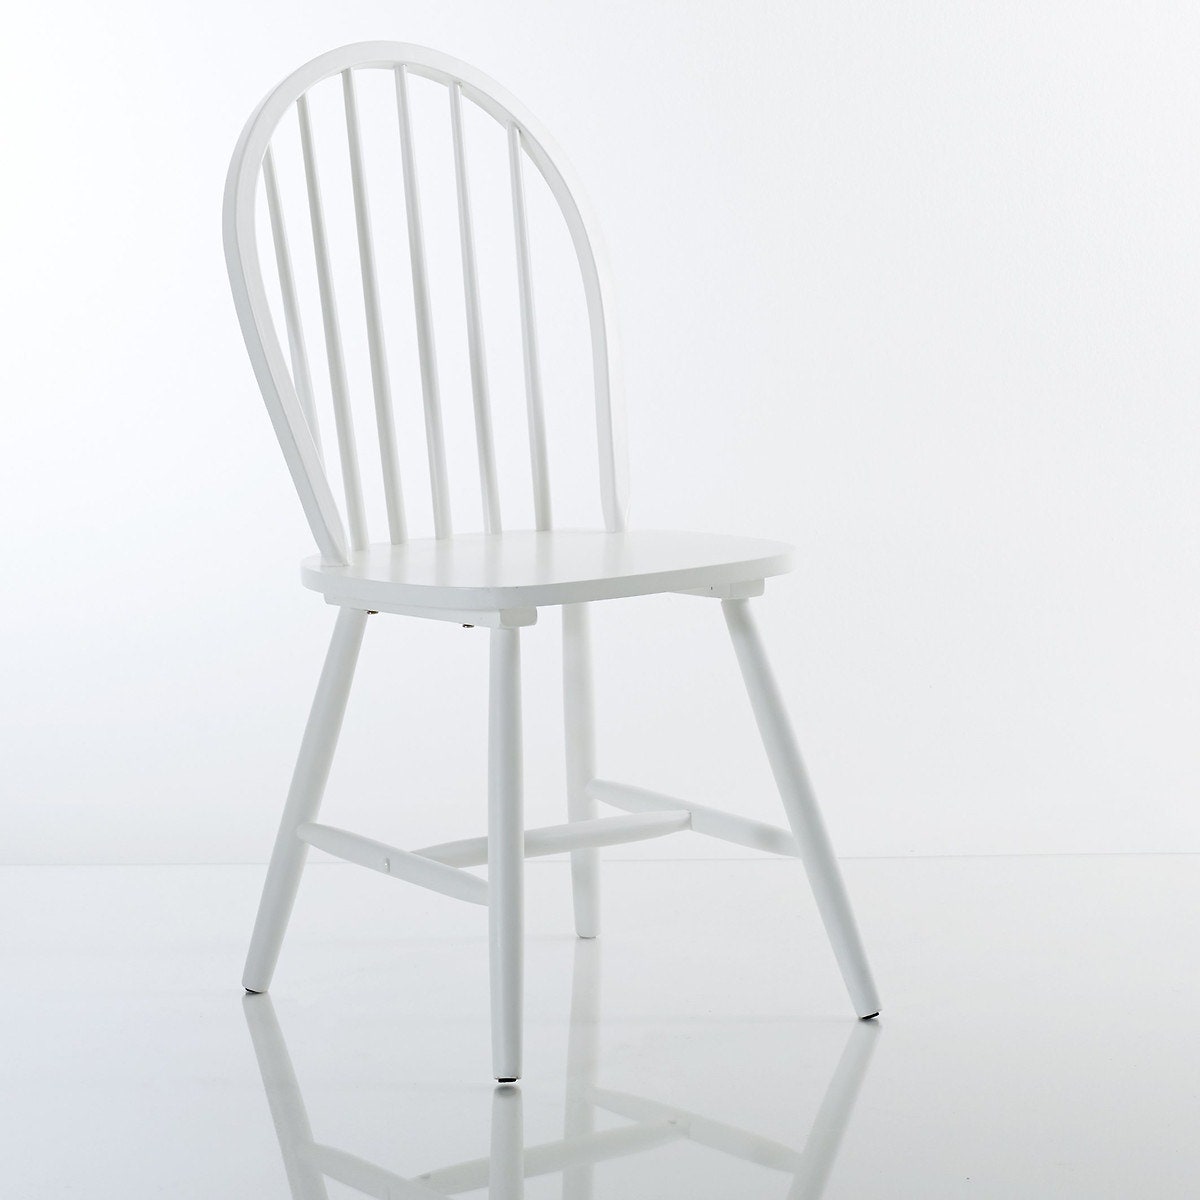 Комплект из двух стульев Windsor 14 364 руб.